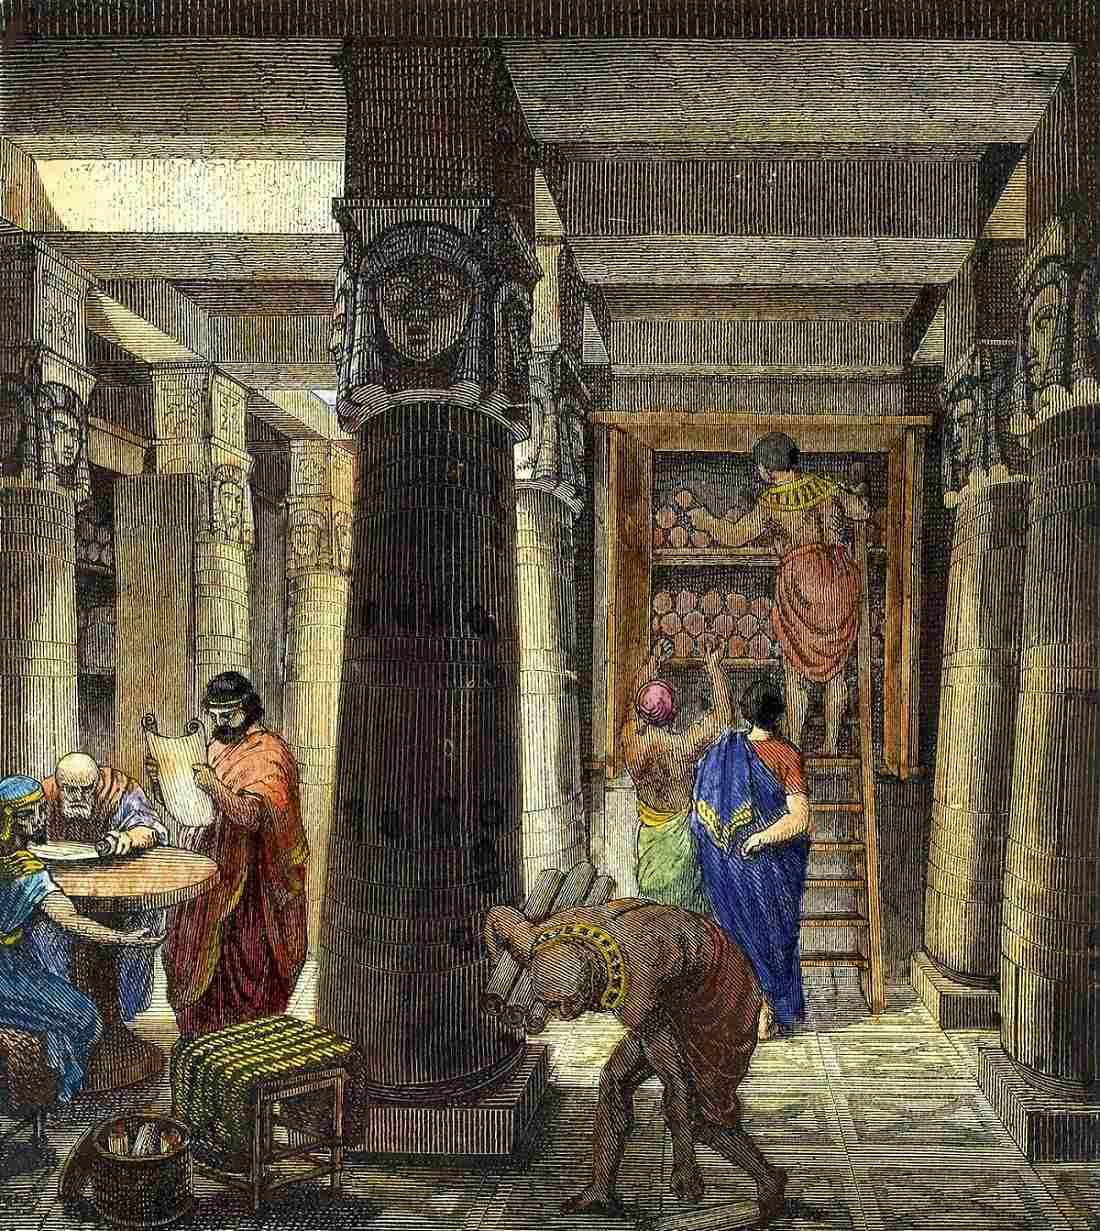 The Library of Ashurbanipal: Det ældste kendte bibliotek, der inspirerede biblioteket i Alexandria 2